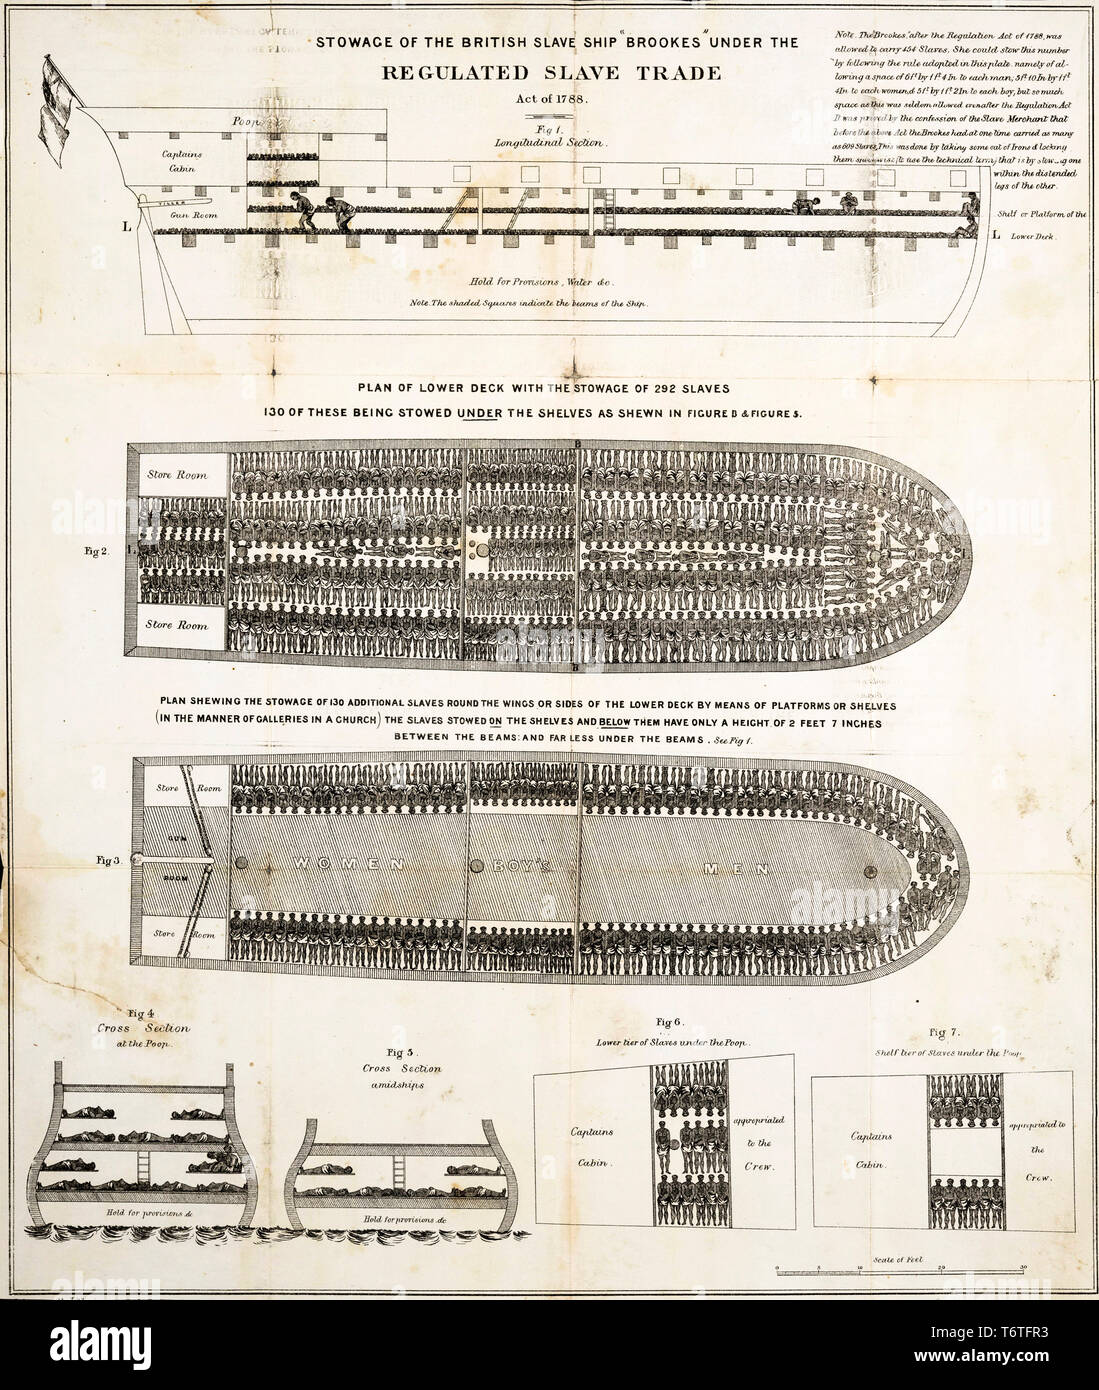 Stauung der Slaves Diagramm der Britischen Sklavenschiff Brookes unter den geregelten Slave Trade Act von 1788, 1788 Stockfoto